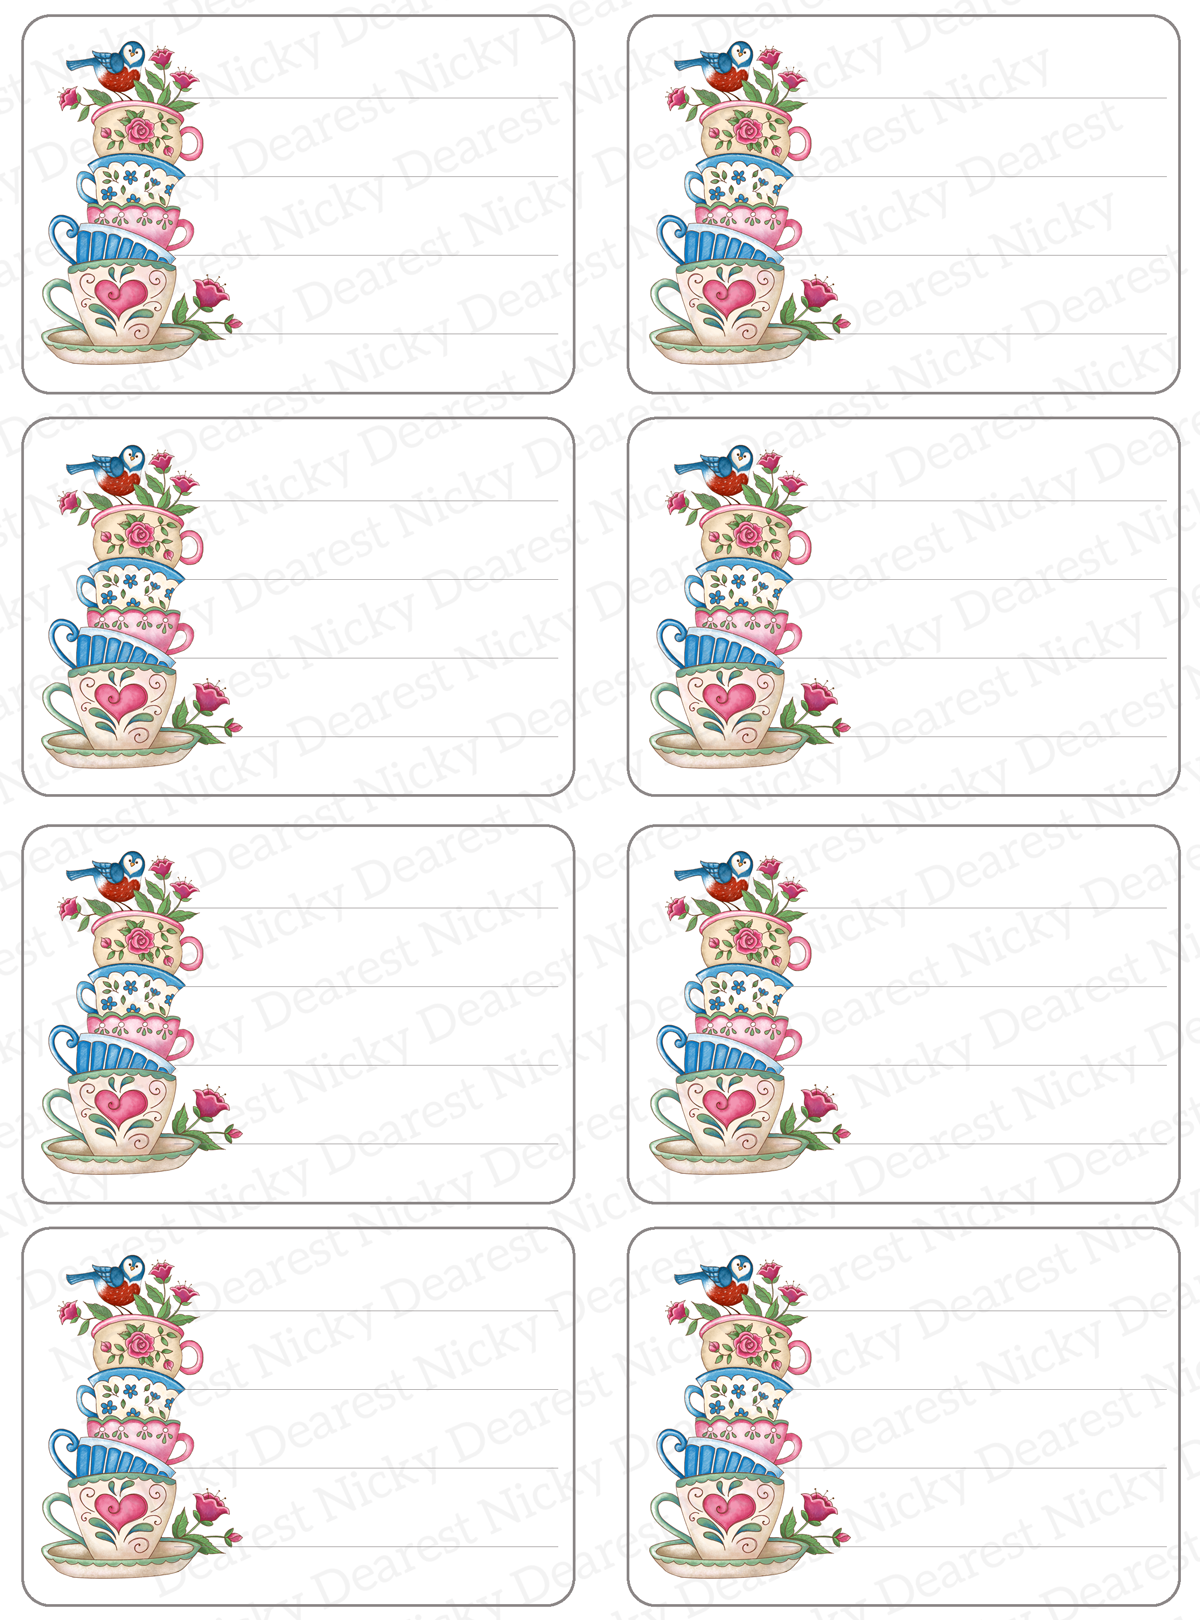 Stack of Teacups Mailing Address Labels - Set of 16